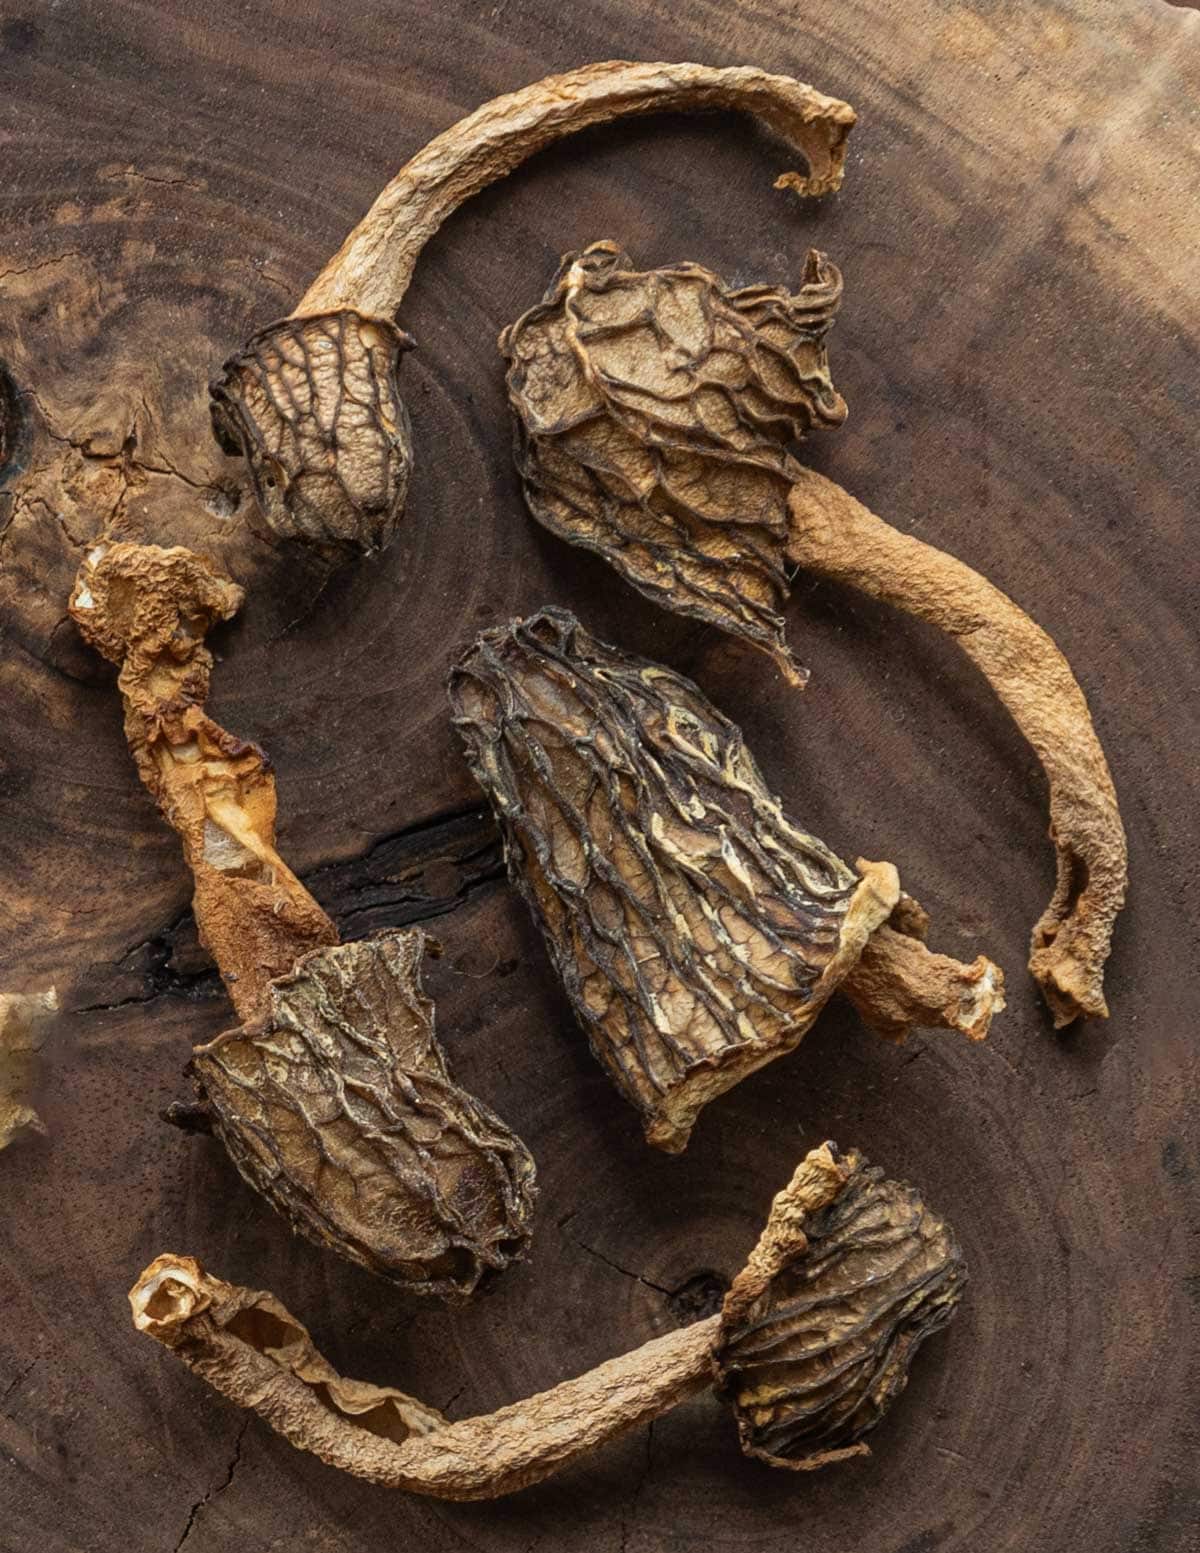 Dried Verpa bohemica mushrooms. 